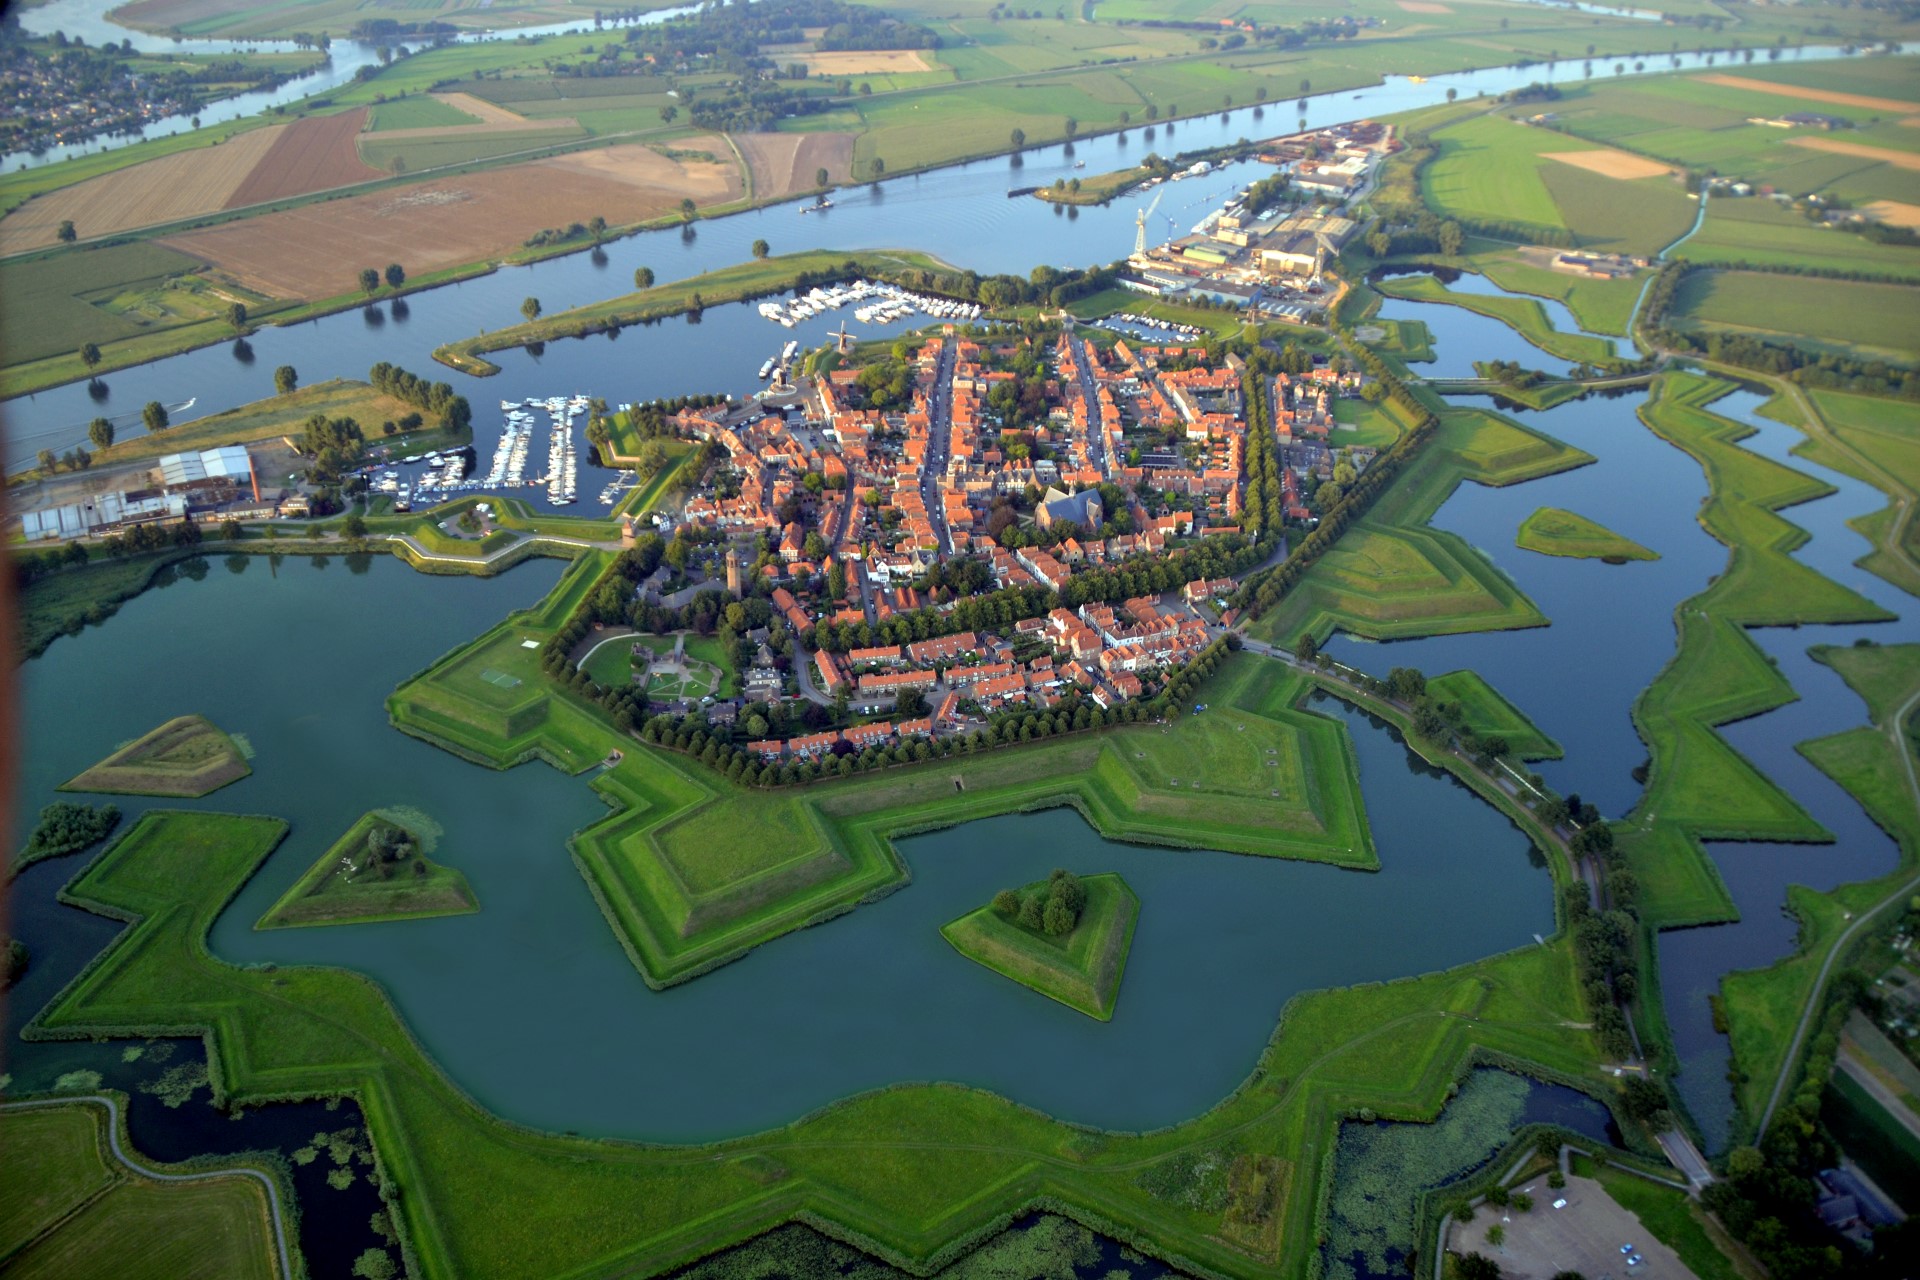 Niederlande: Von Festung zu Festung durch Brabant